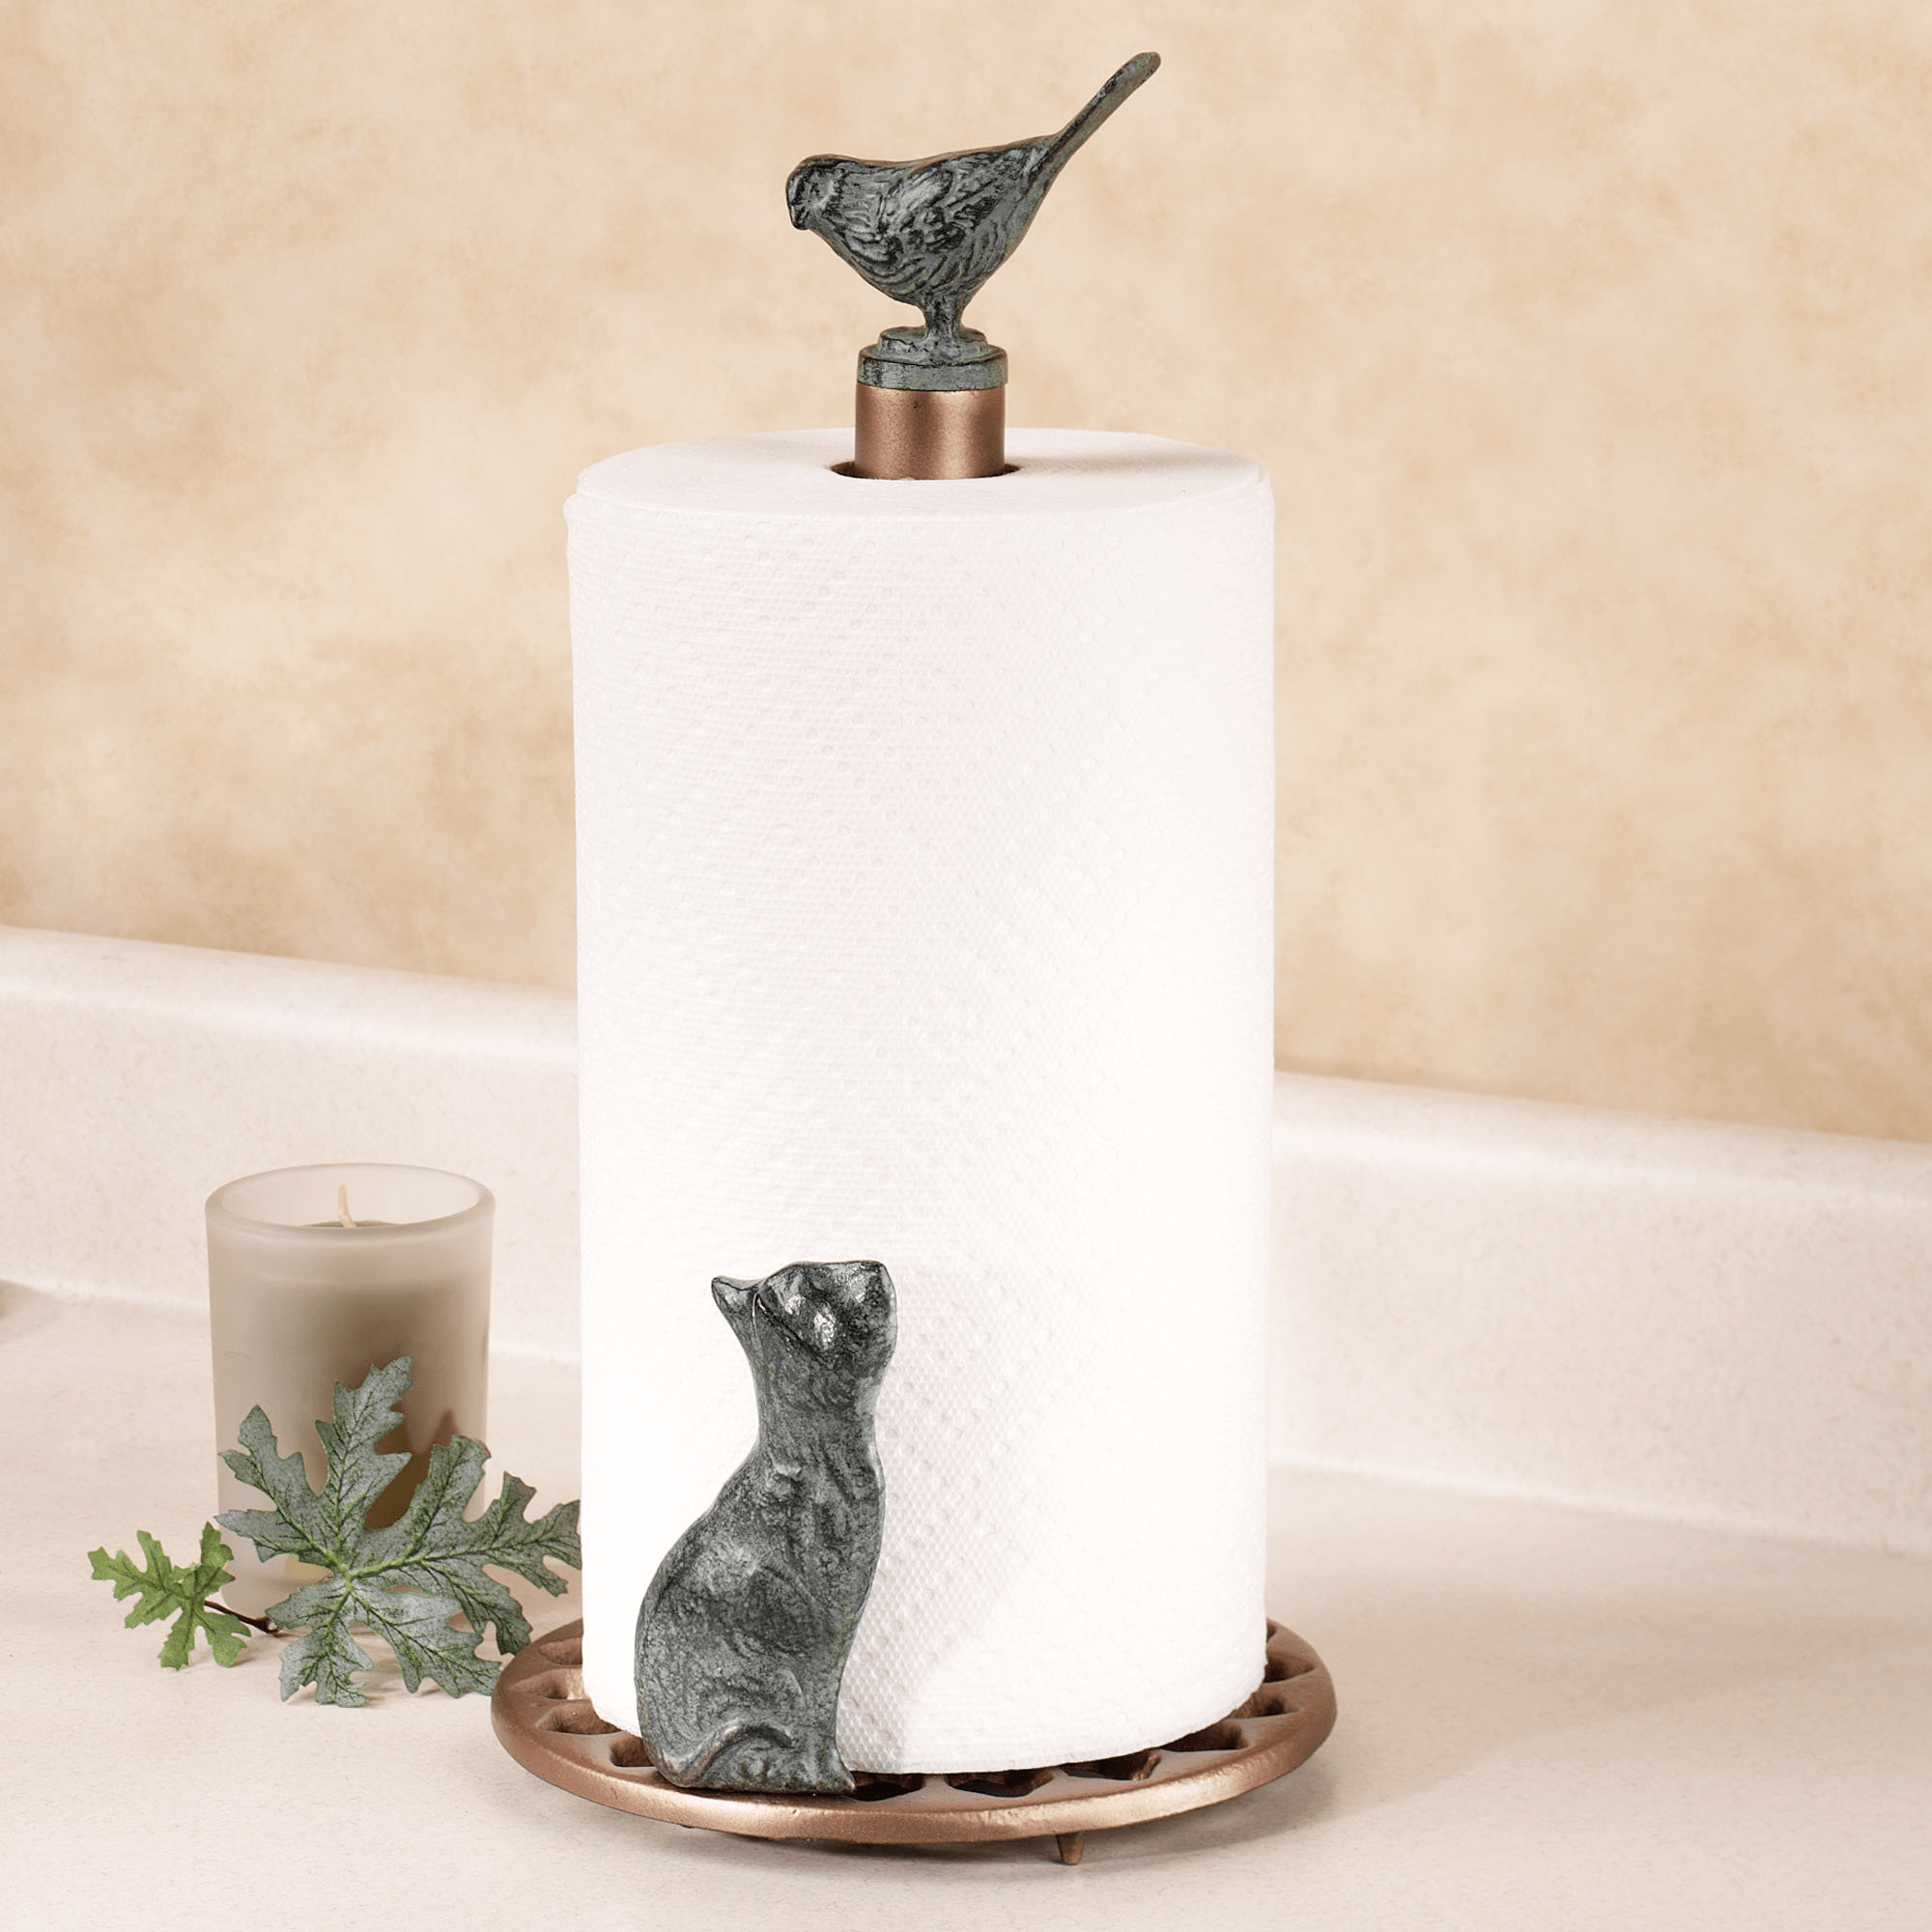 Decorative bathroom paper towels | EasyHomeTips.org